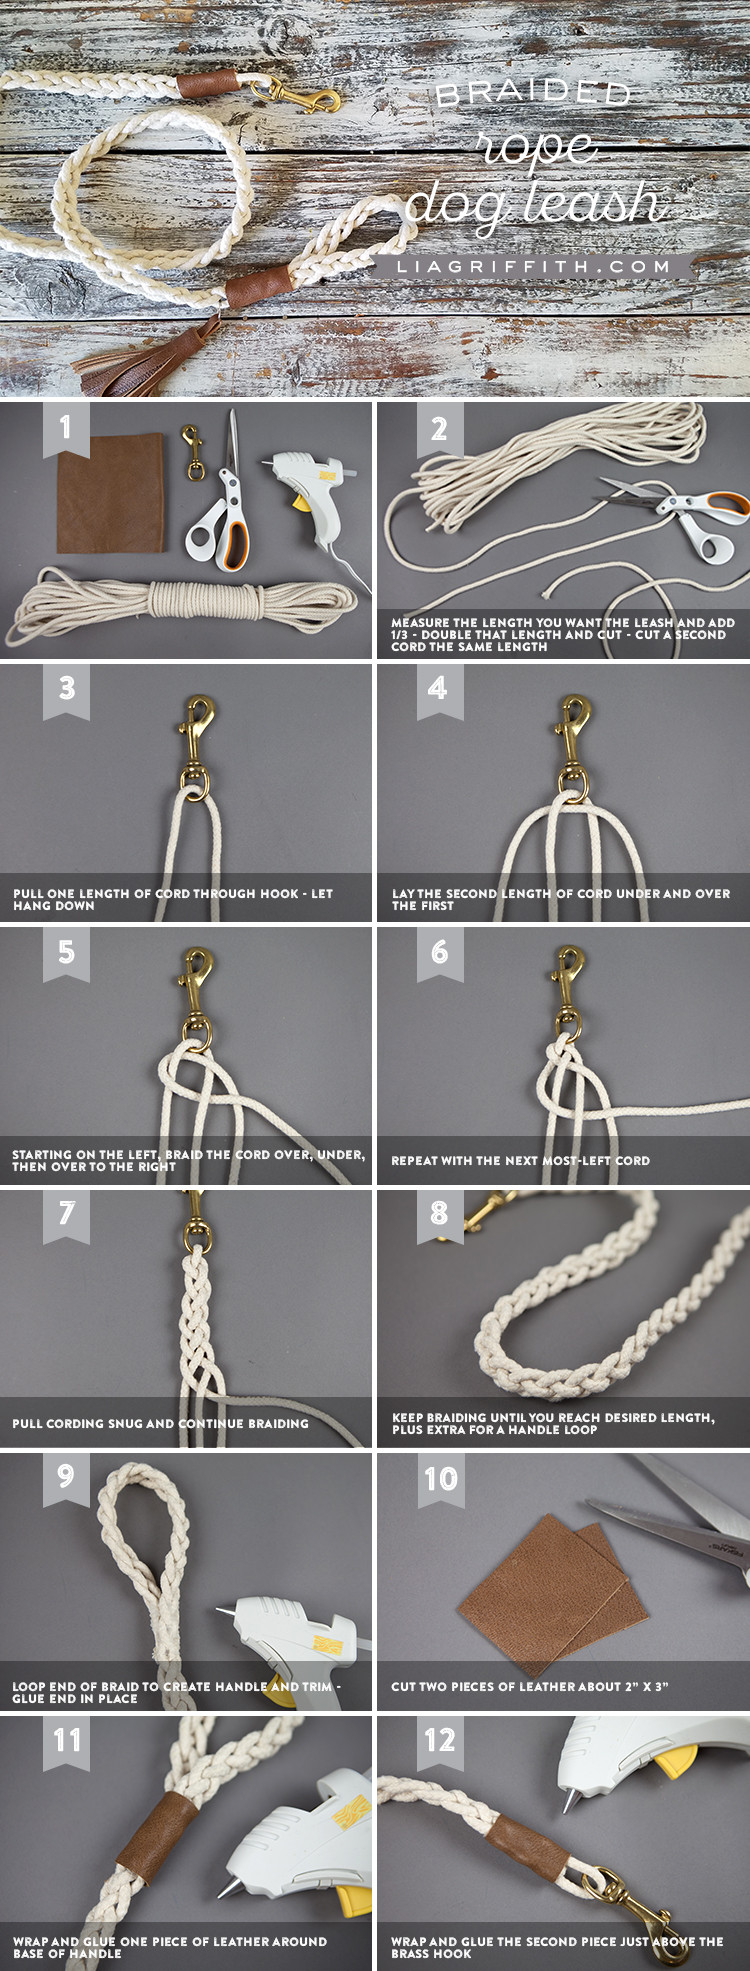 DIY Rope Dog Leash
 DIY Dog Leash Tutorial with Braided Rope